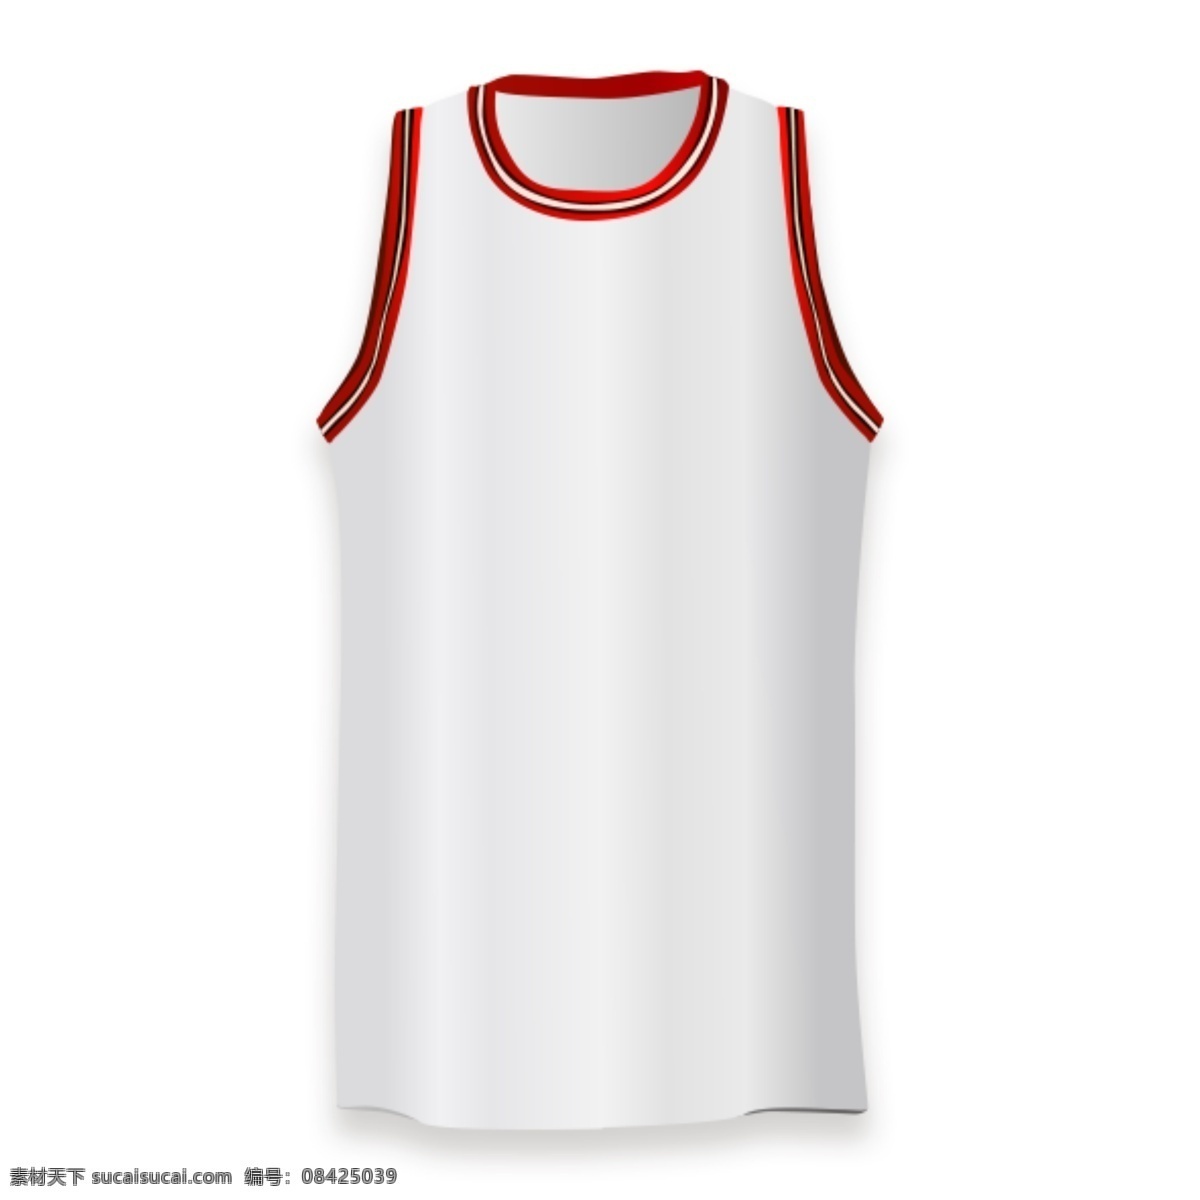 球服 篮球服 篮球衣 衣服 衣服元素 衣服素材 衬衫 衬衫元素 衬衫素材 衬衫衣服 t恤 t恤元素 t恤素材